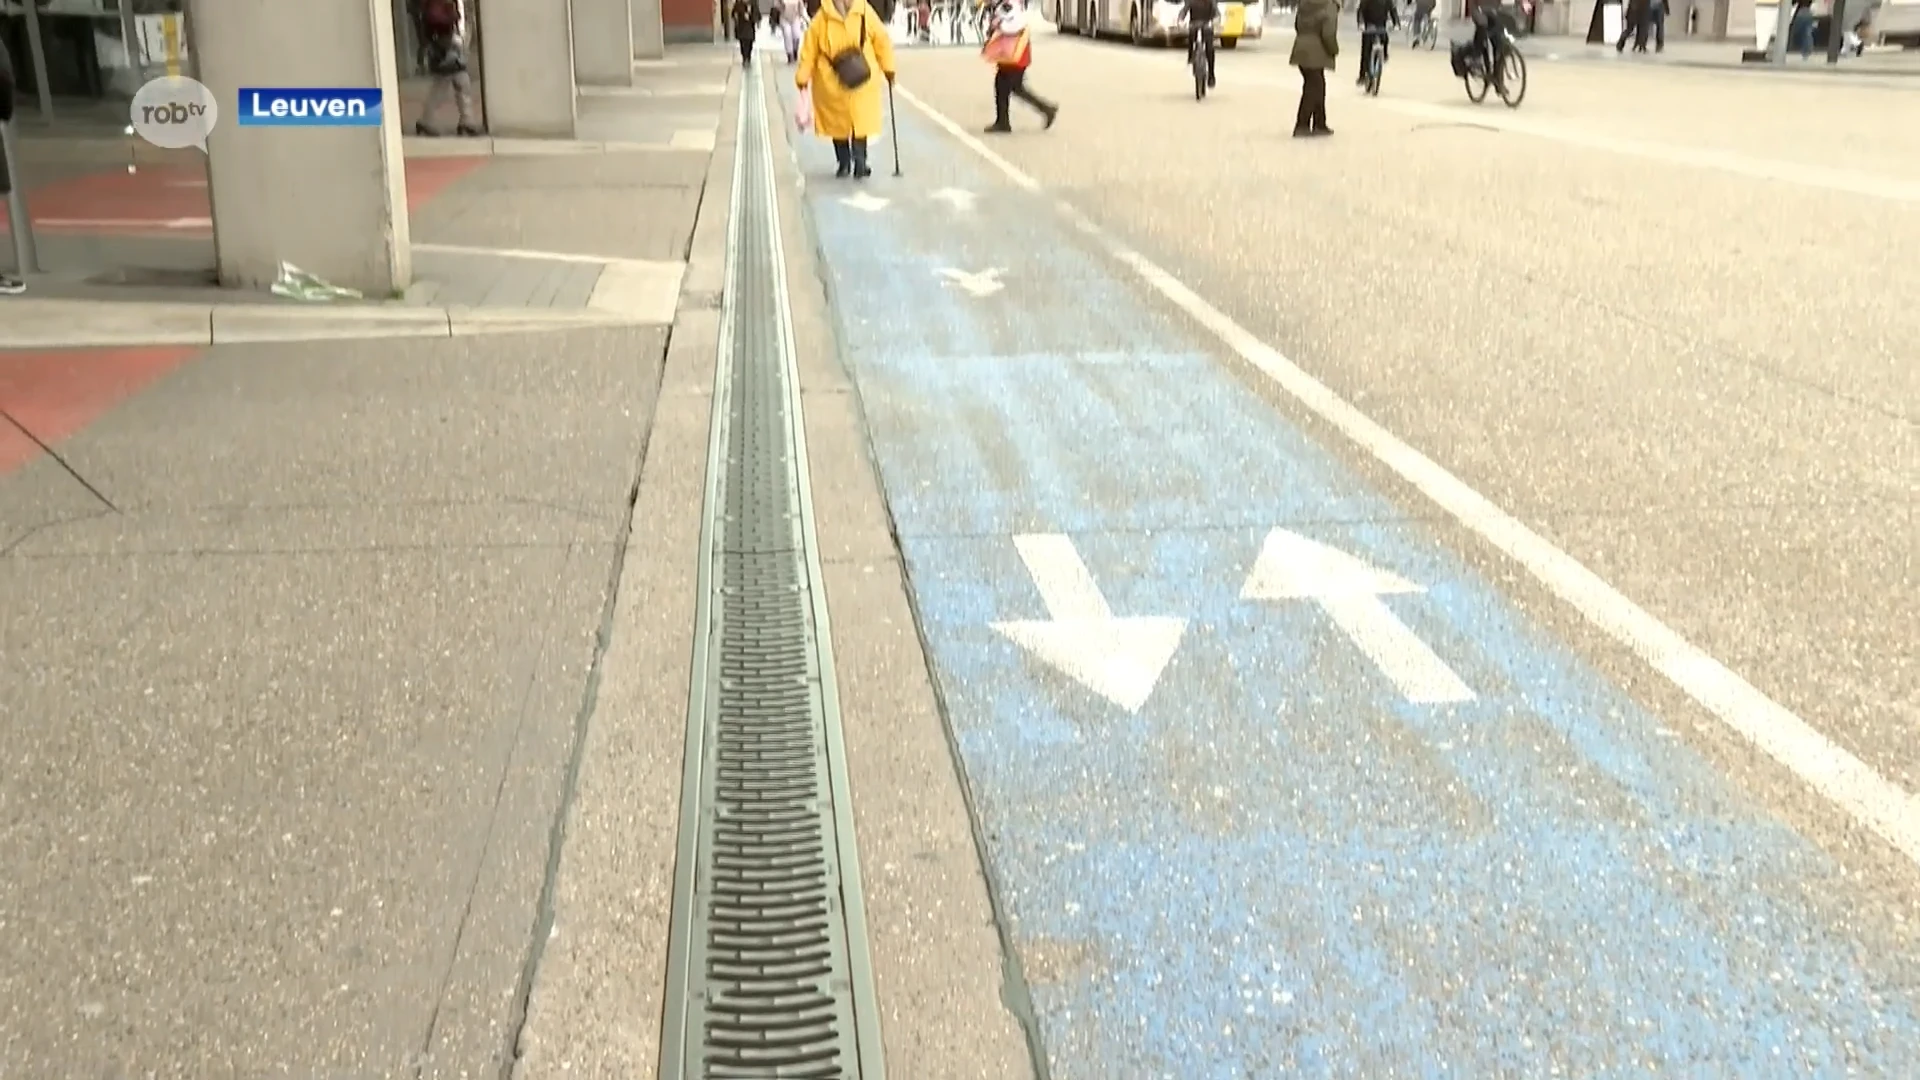 Eén centraal perron aan busstation Leuven kan verkeerssituatie veiliger maken: "Minder conflict tussen voetgangers en bussen"